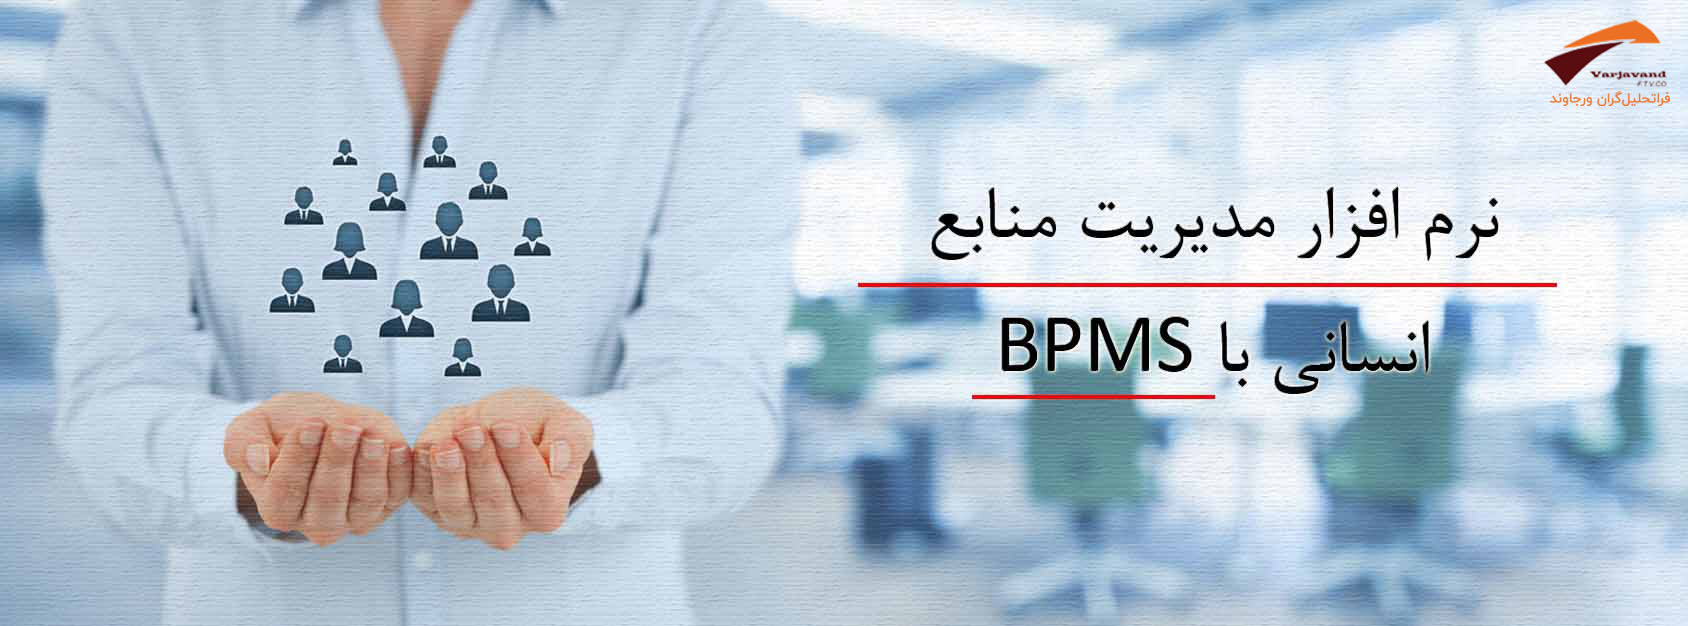 نرم افزار مدیریت منابع انسانی با BPMS